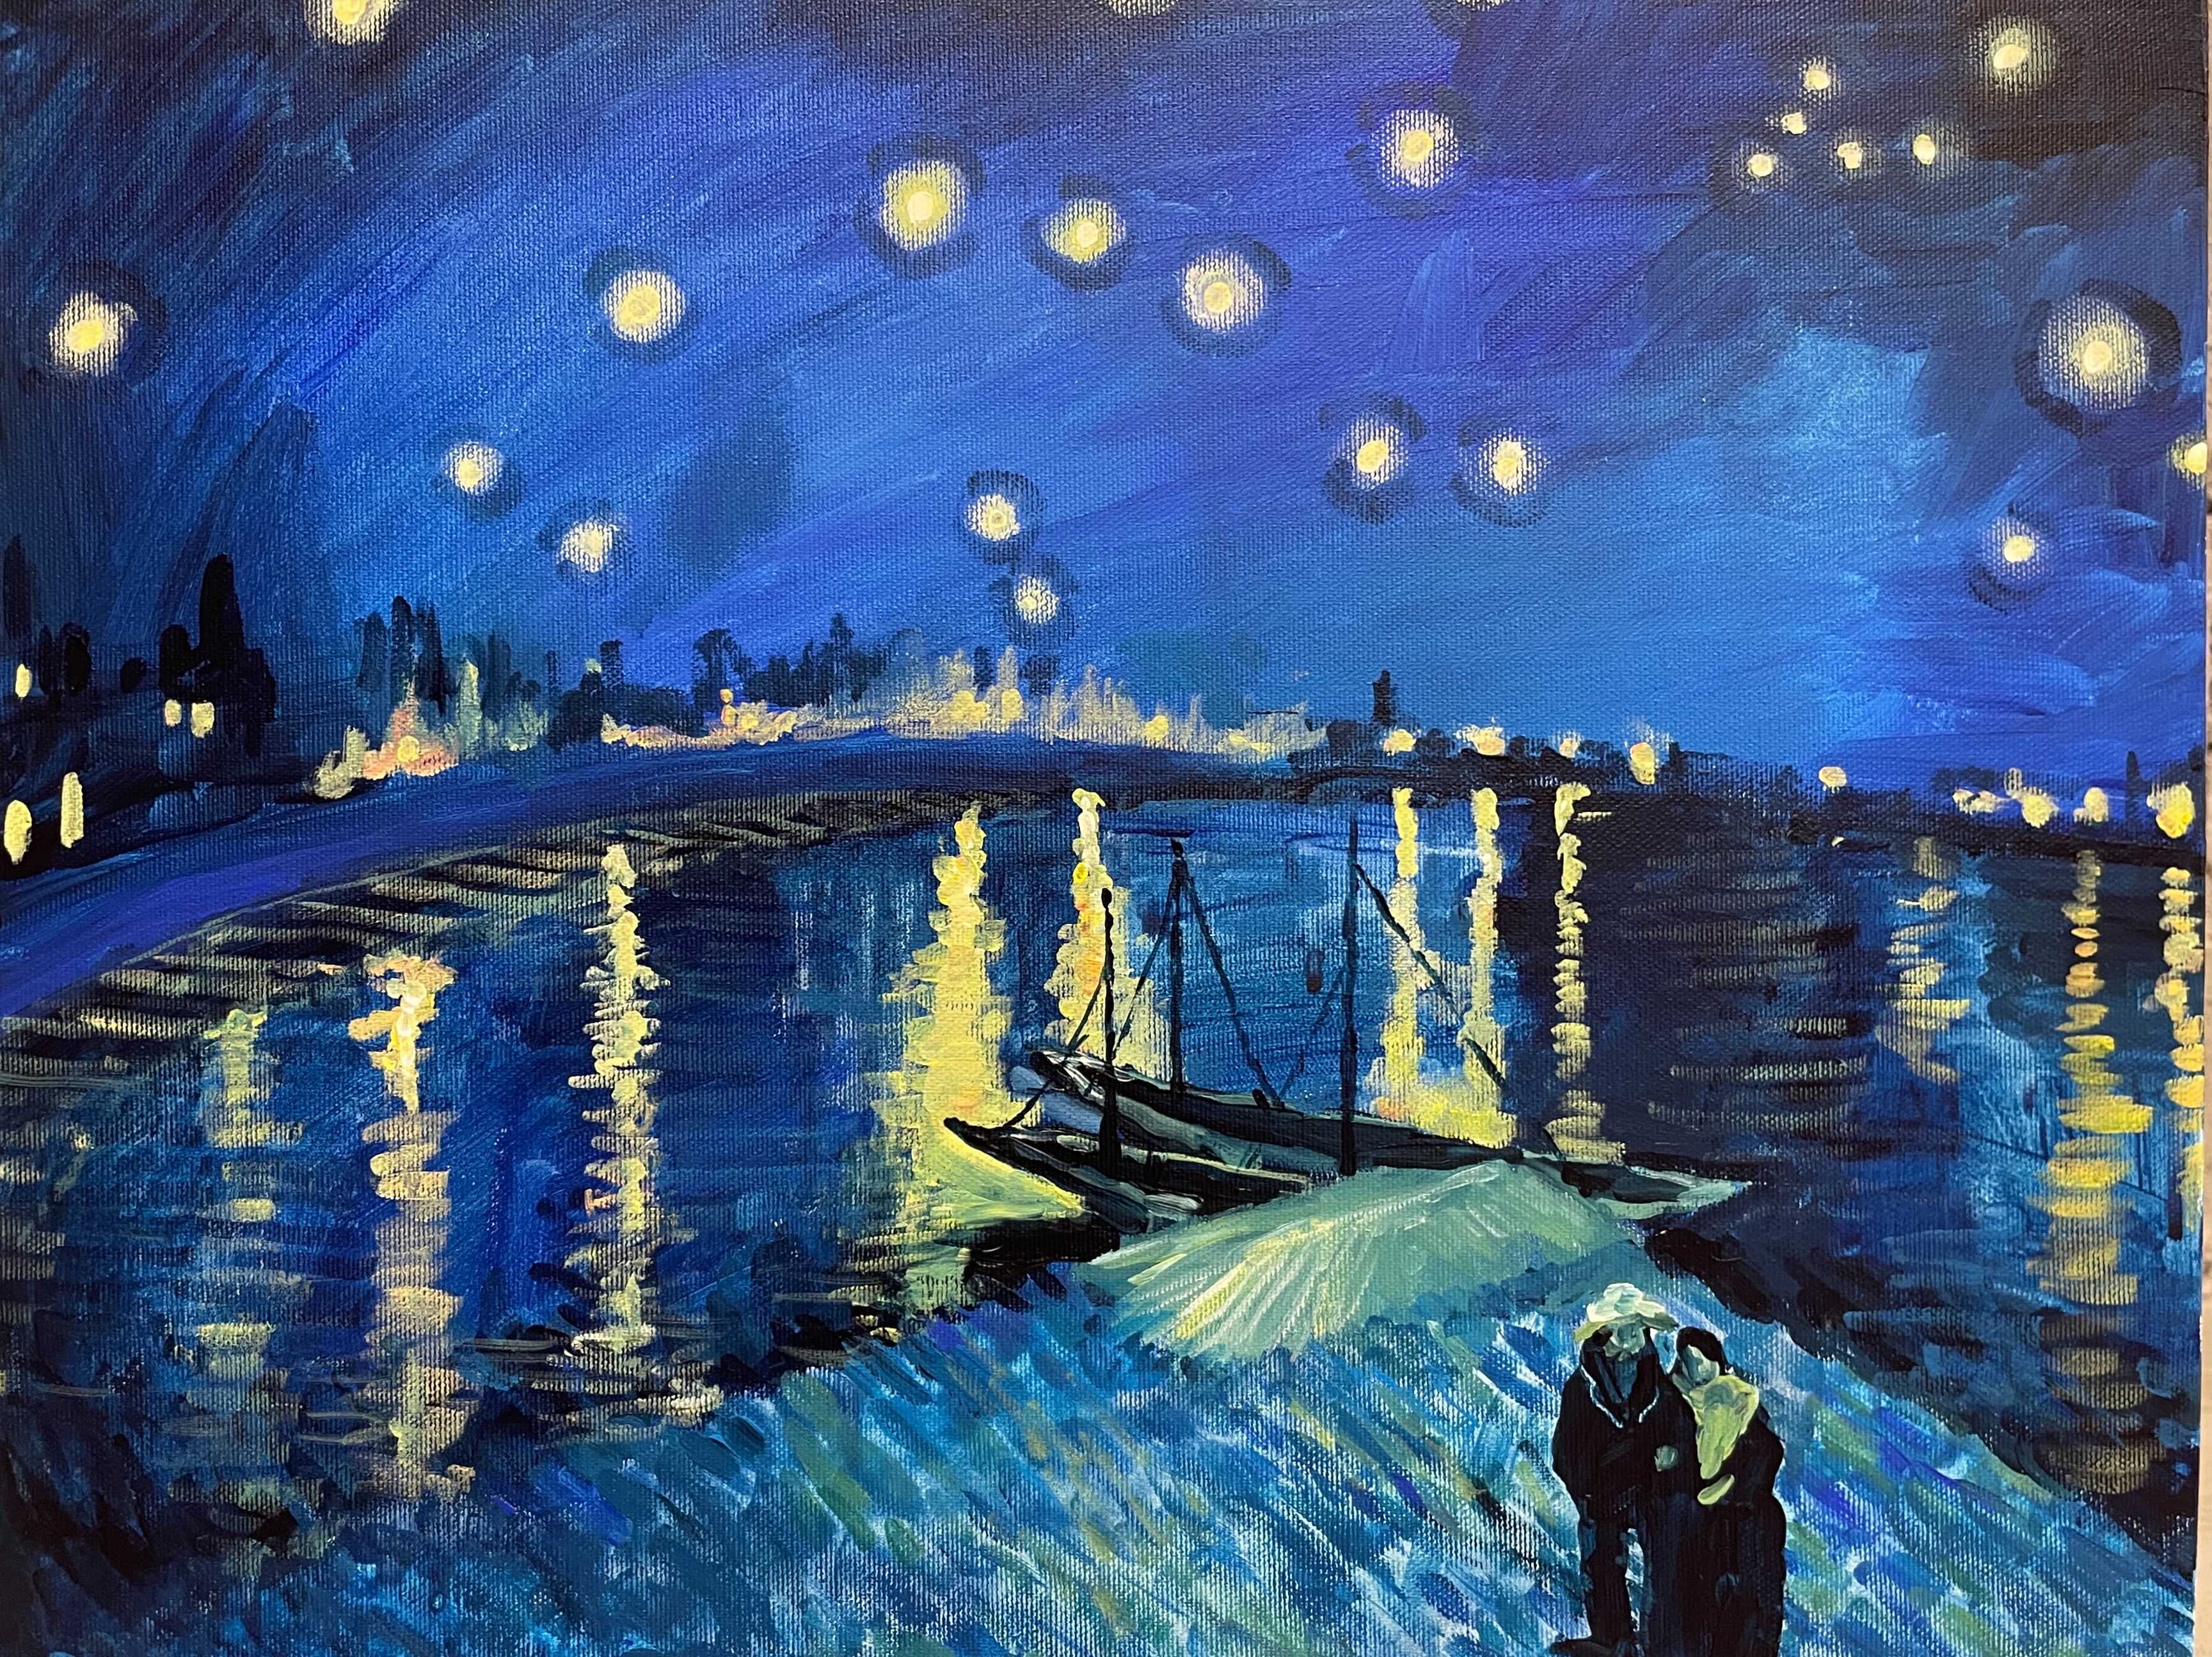 06月26日 (水) 11:00-14:00 | 日本橋 | フィンセント・ファン・ゴッホ | 星降る夜 (Starry Night Over the Rhone" by Vincent van Gogh at Nihon-bashi)